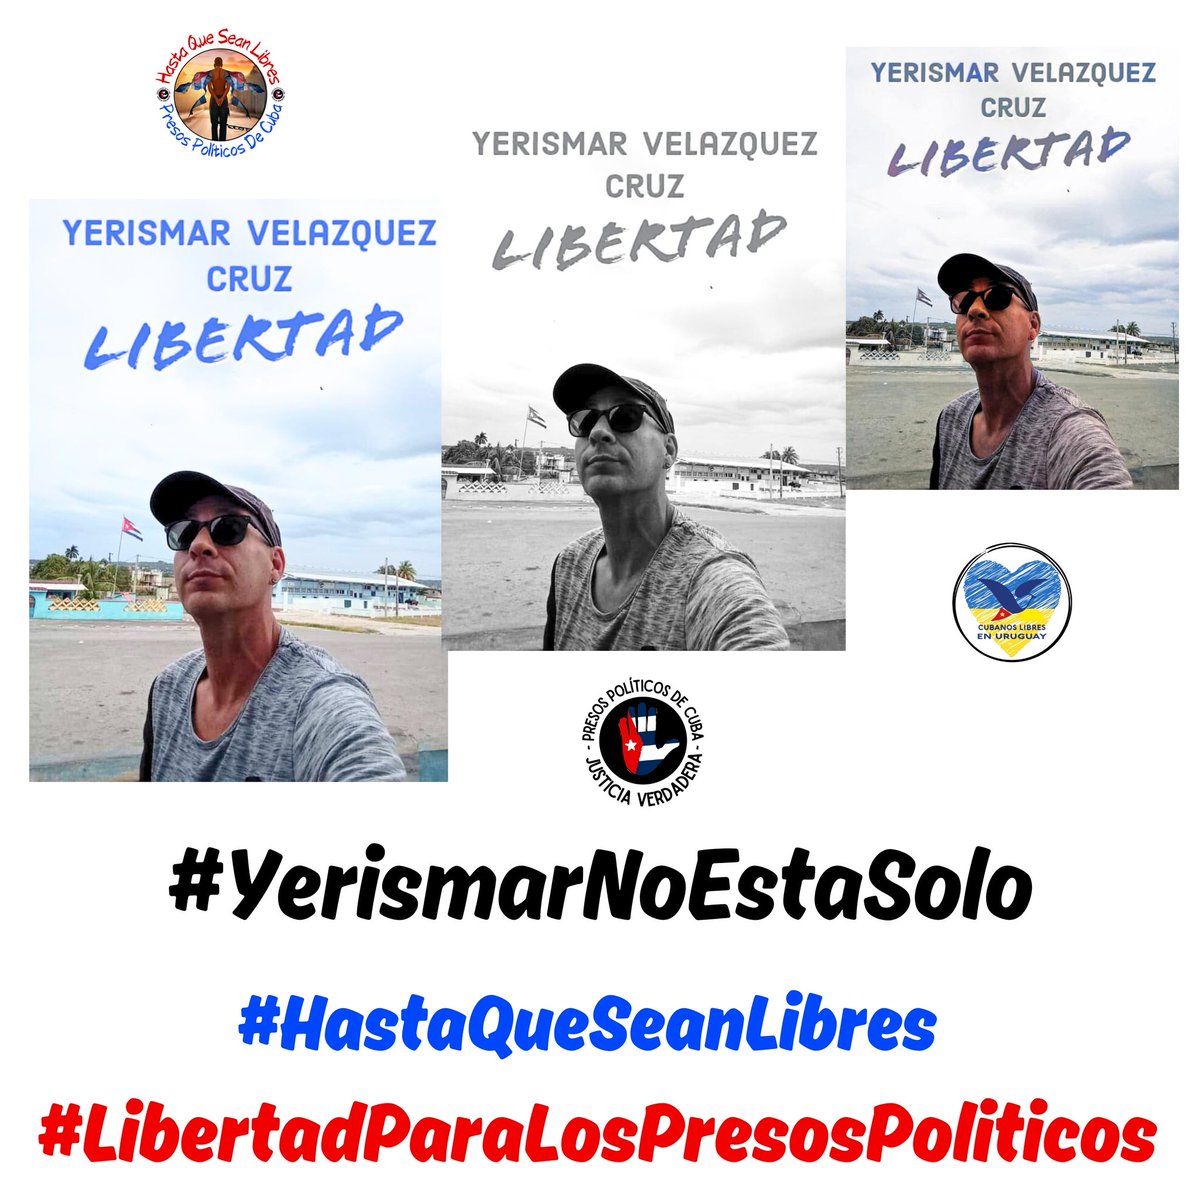 ‼️Twittazo por los #PresosPoliticosDeCuba‼️ NO los podemos abandonar, nos necesitan !! EXIGIMOS #AbajoLaDictadura #LibertadParaLosPresosPolíticos #AbajoElComunismo #PatriaVidaYLibertad